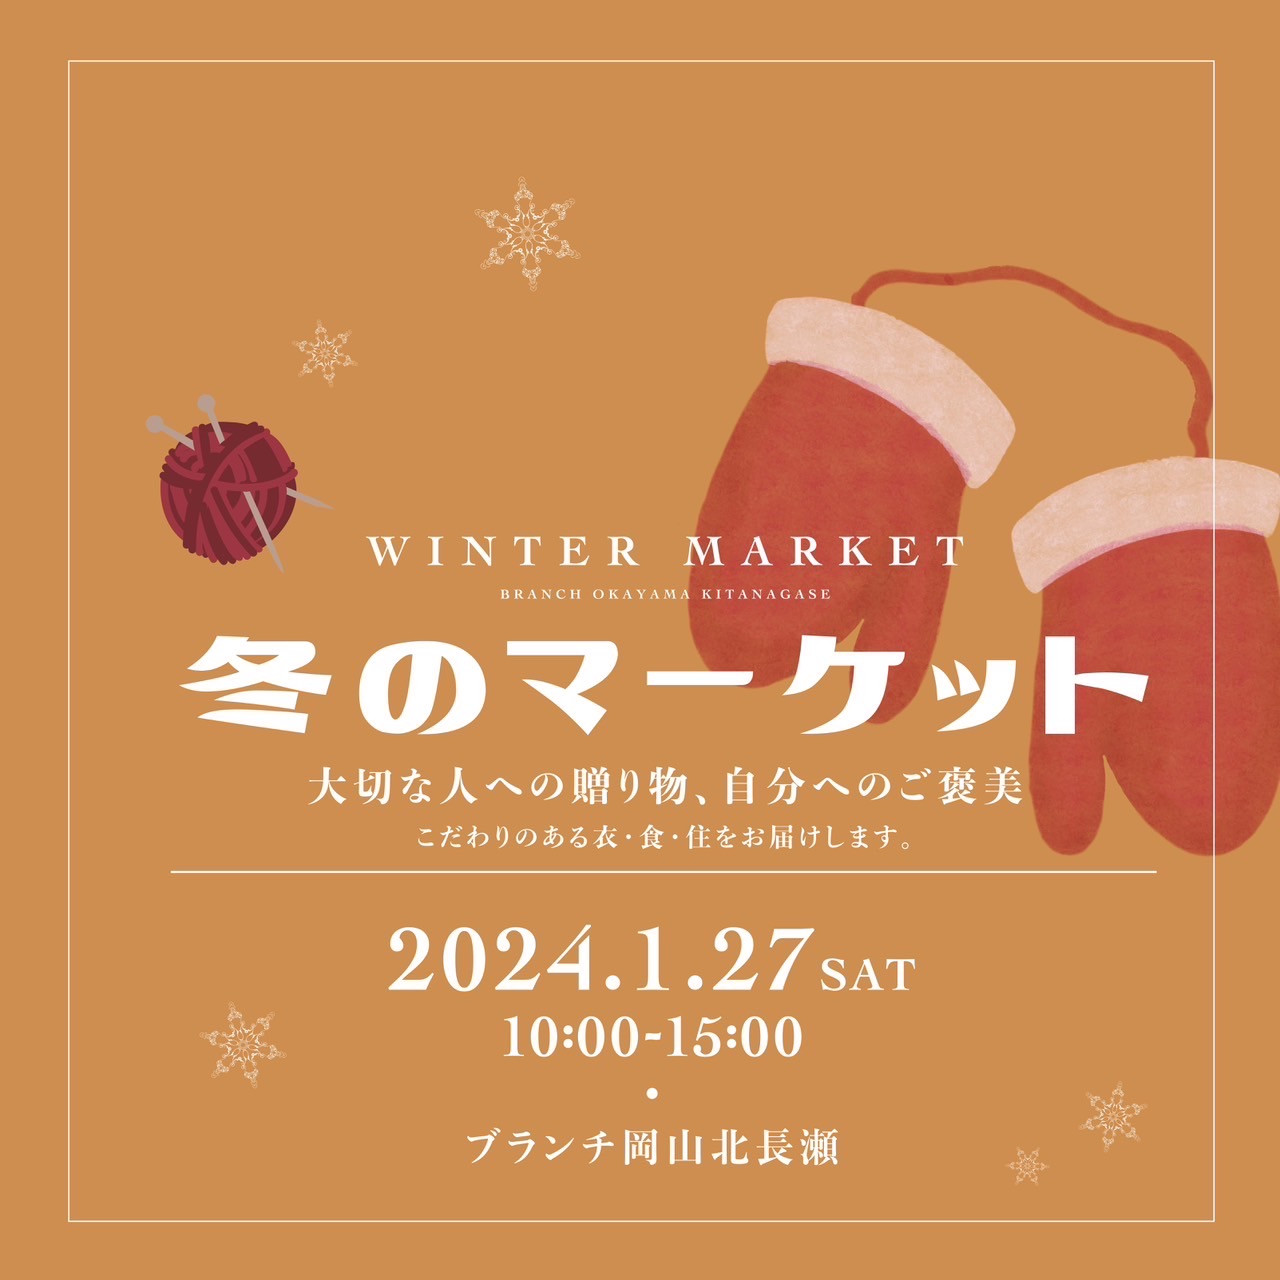 【1月27日】（土） 『冬のマーケット』 イベント出店のお知らせ